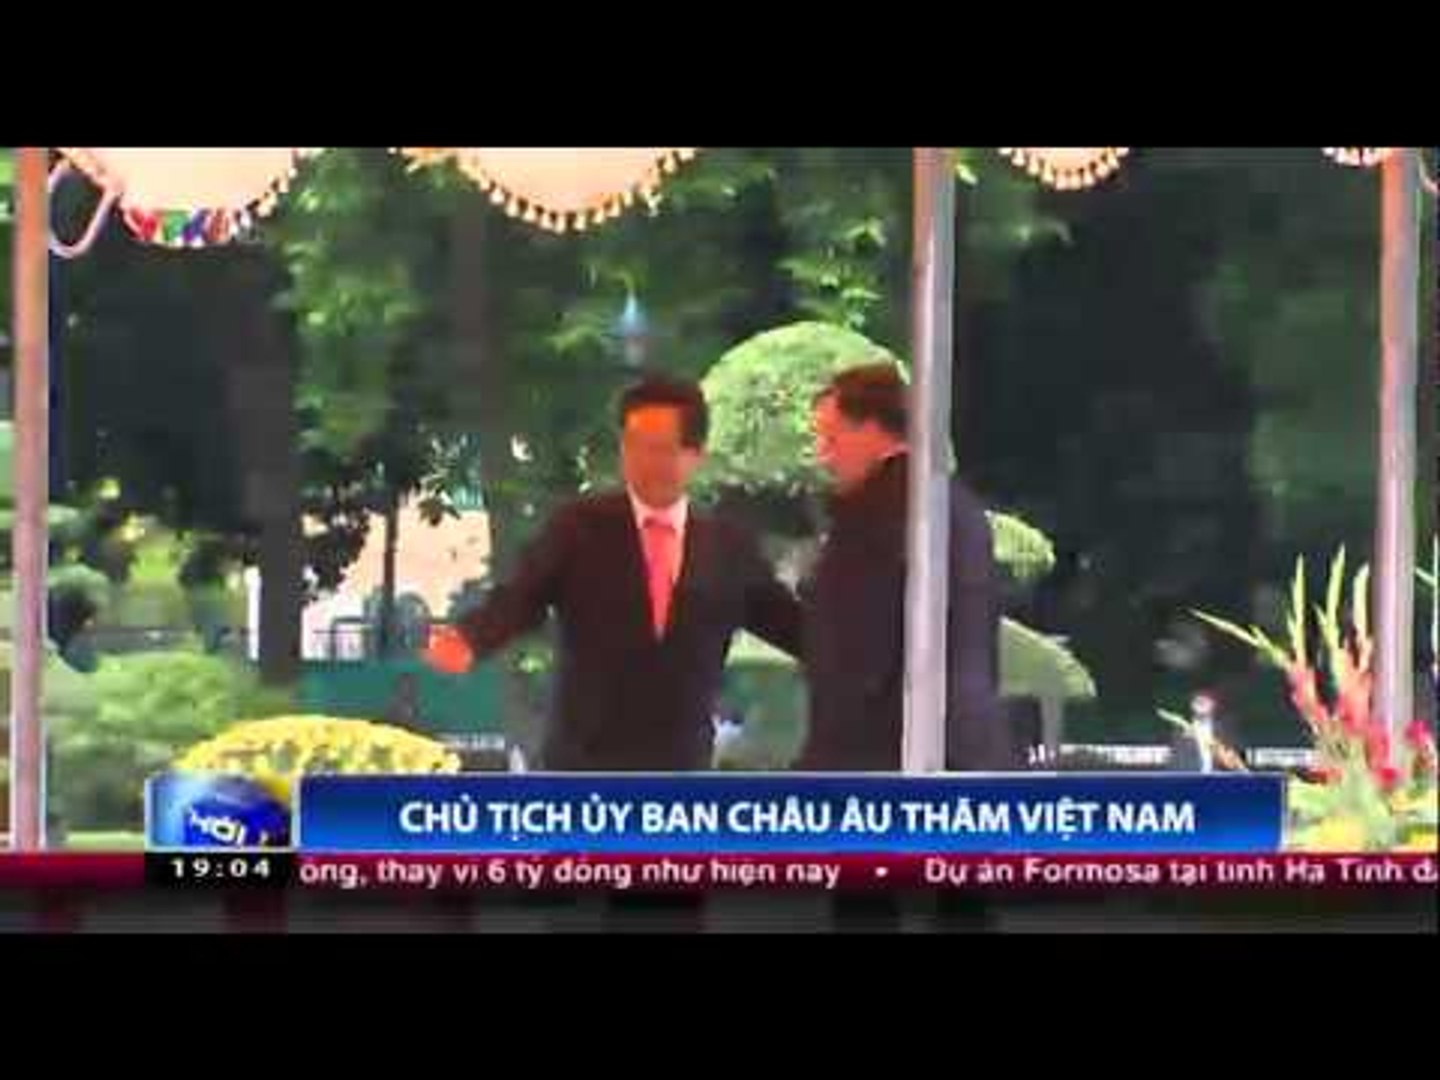 Chủ tịch Ủy ban châu Âu thăm Việt Nam